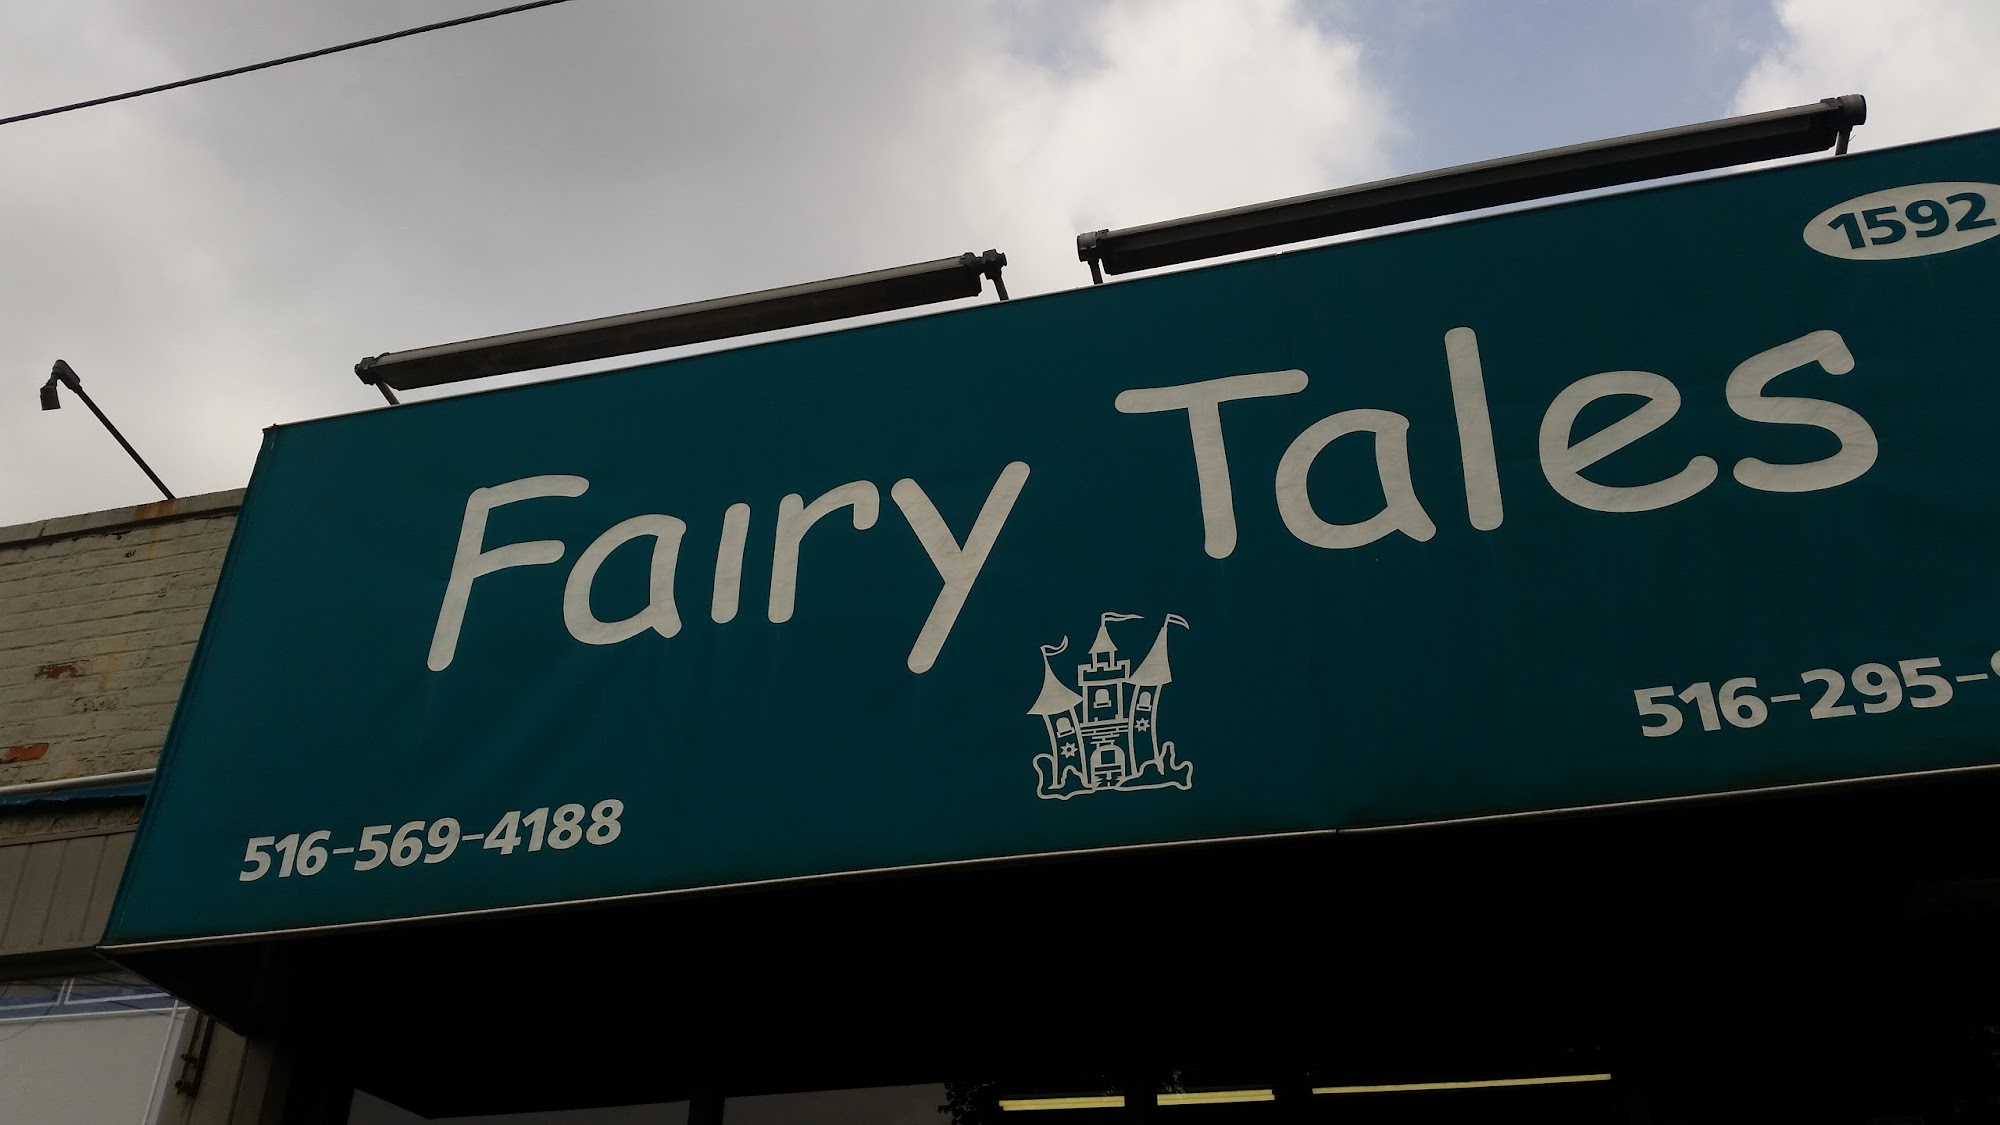 Fairy Tales Salon 1592 Broadway, Hewlett New York 11557